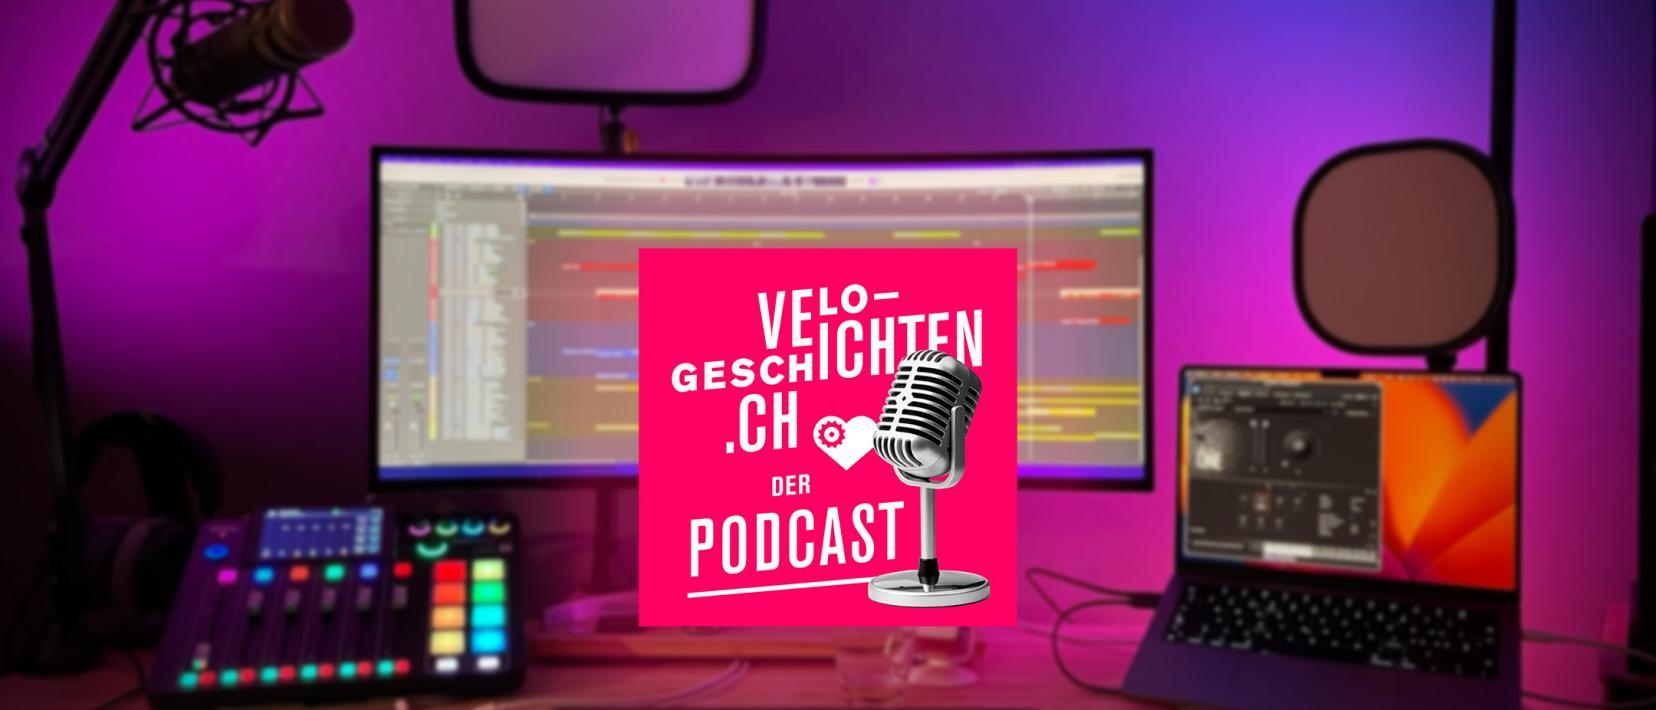 Einblick in die Produktionsstätte des Velo-Geschichten-Podcasts